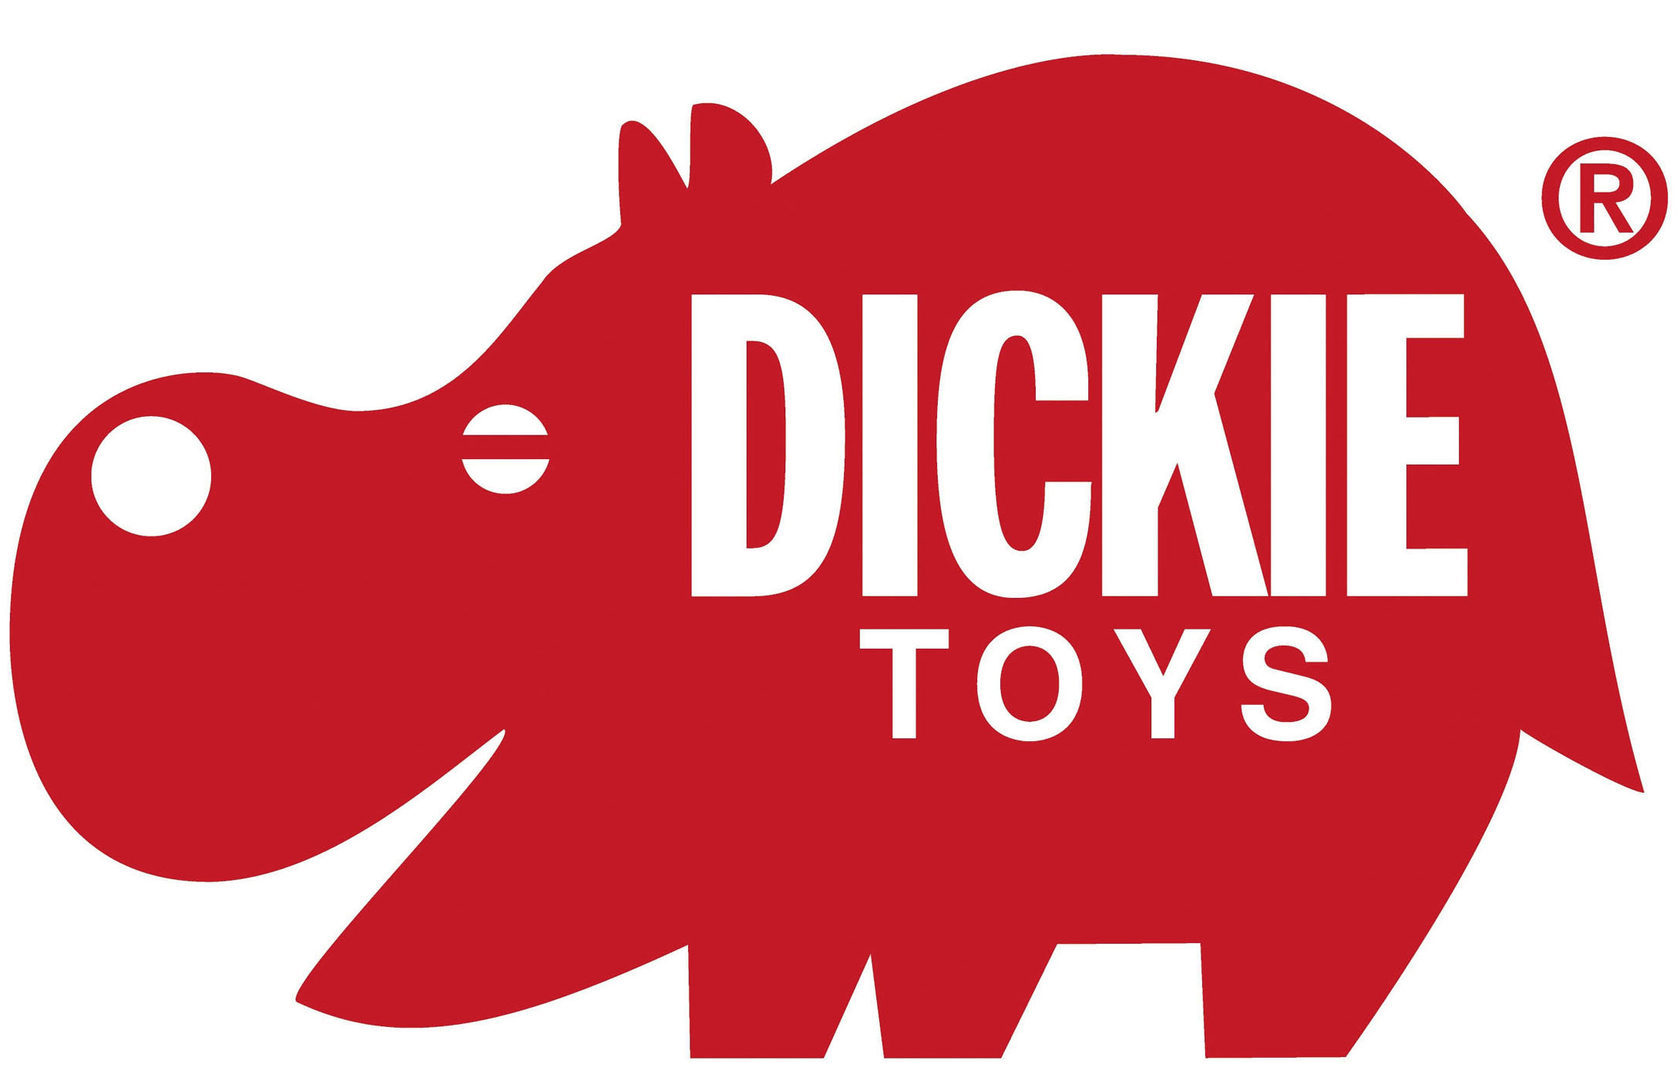 Dick toy. Dickie logo. Dickie Toys logo. Бренды игрушек для детей. Дики Тойс игрушки.